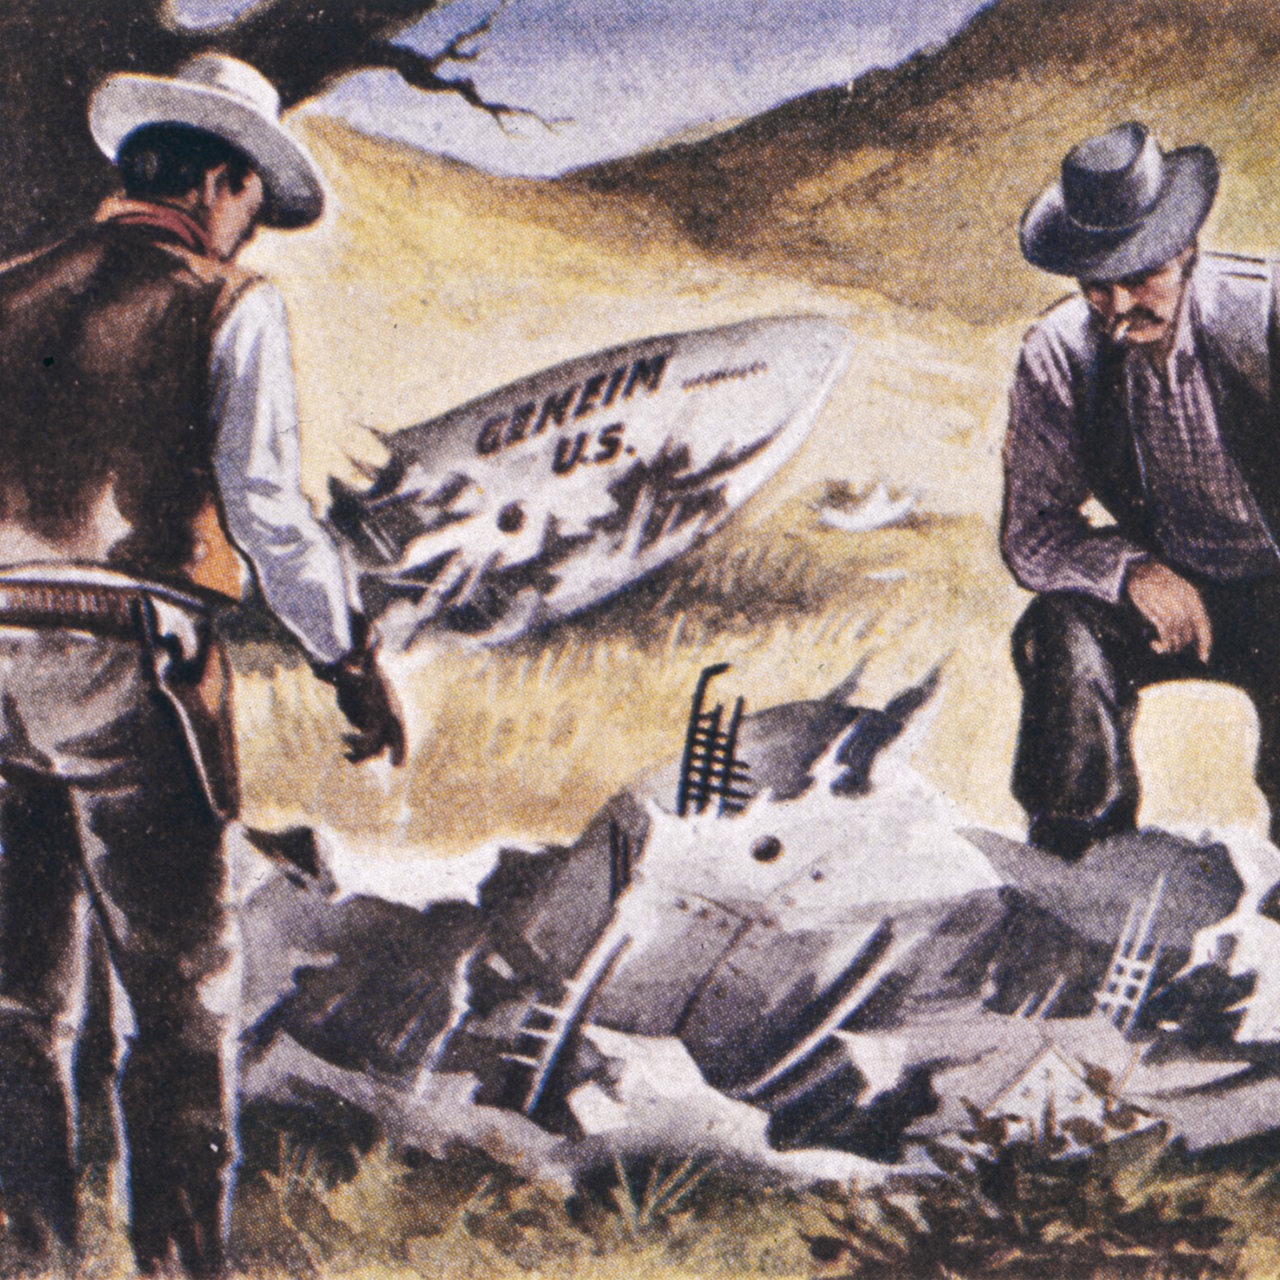 Gemälde zeigt zwei Cowboys, die einen vermeintlichen Ufo-Fund betrachten